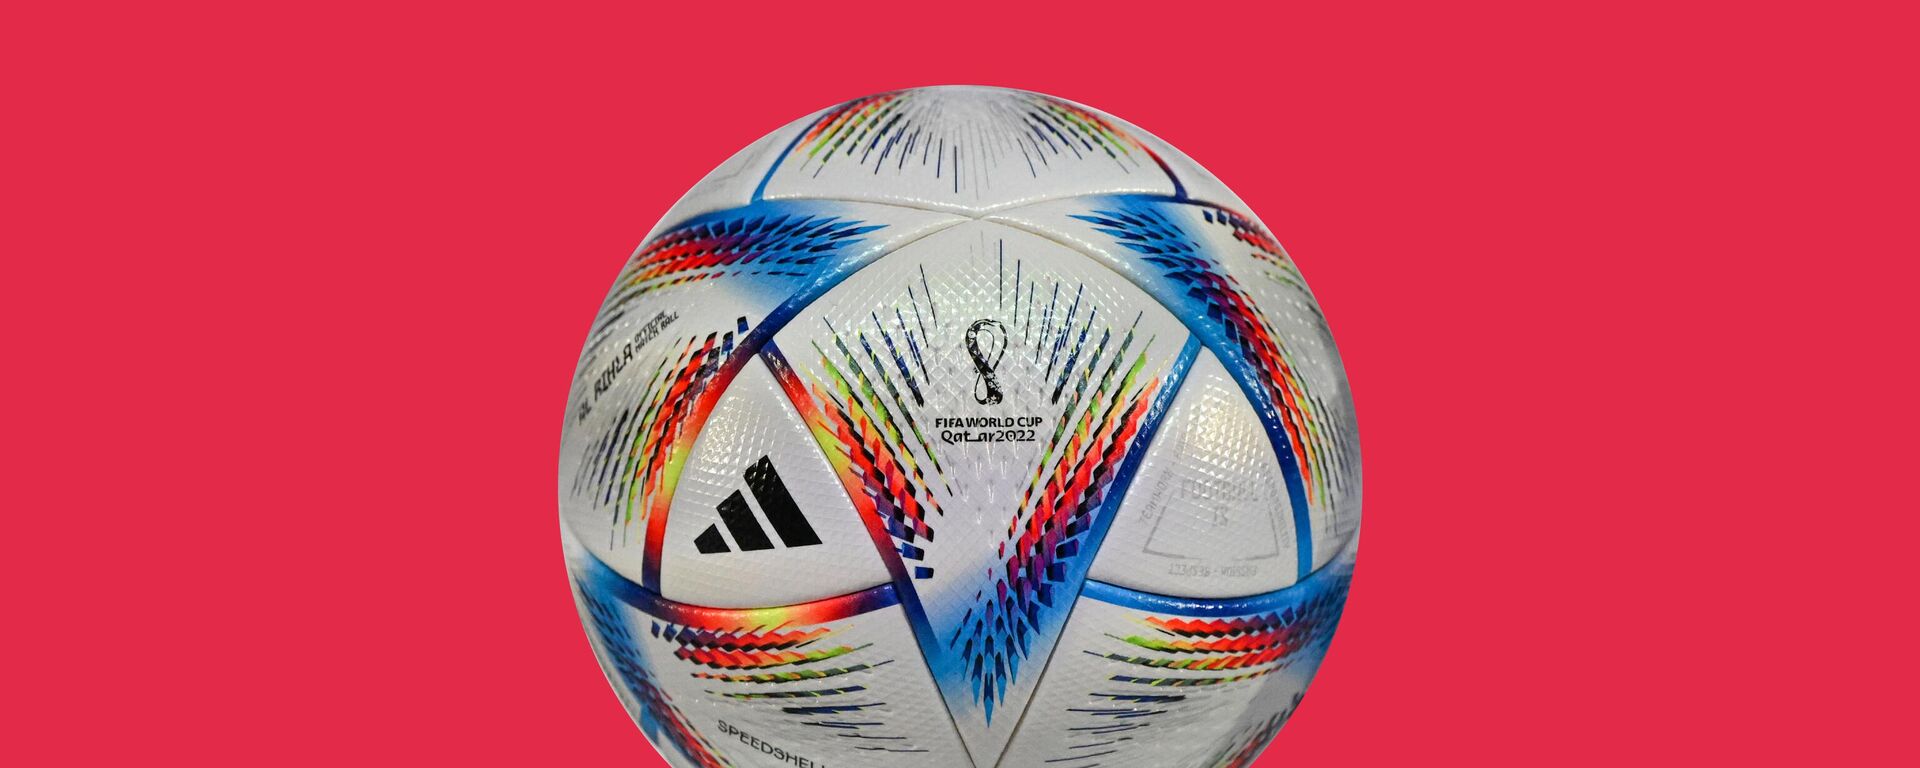 Rihla, el balón oficial del Mundial de Catar 2022 - Sputnik Mundo, 1920, 19.11.2022